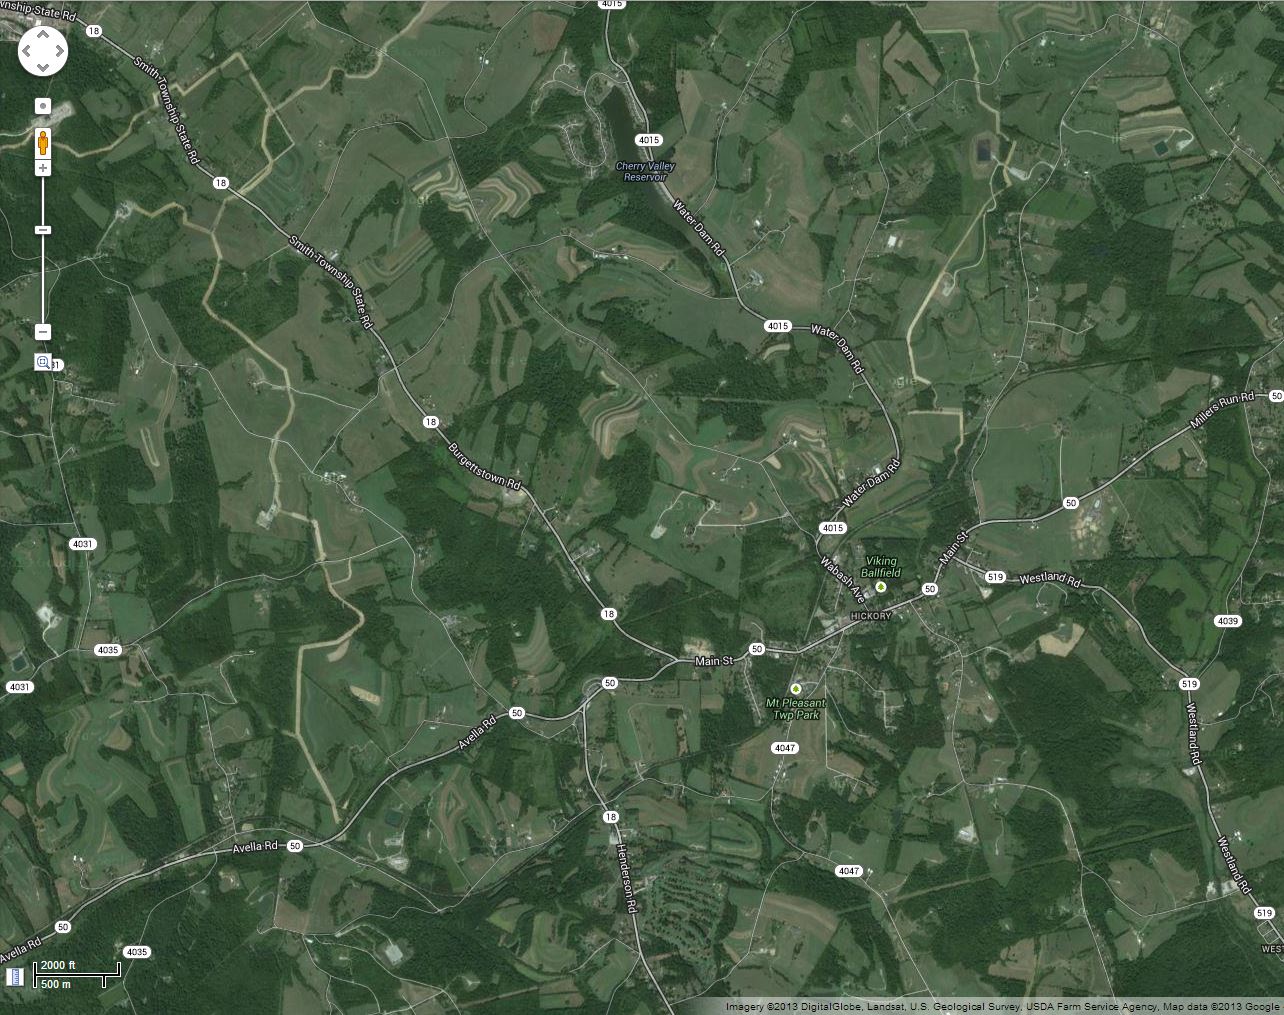 Figure 4 Oblast těžby sz. od Pittsburghu v Pennsylvánii. Tlustší šedohnědé linie jsou trasy nových dočasných povrchových  vodovodů spojujících řídce rozmístěné vrtné plochy. Měřitko je srovnatelné s ostatními mapami. Mapa Google.